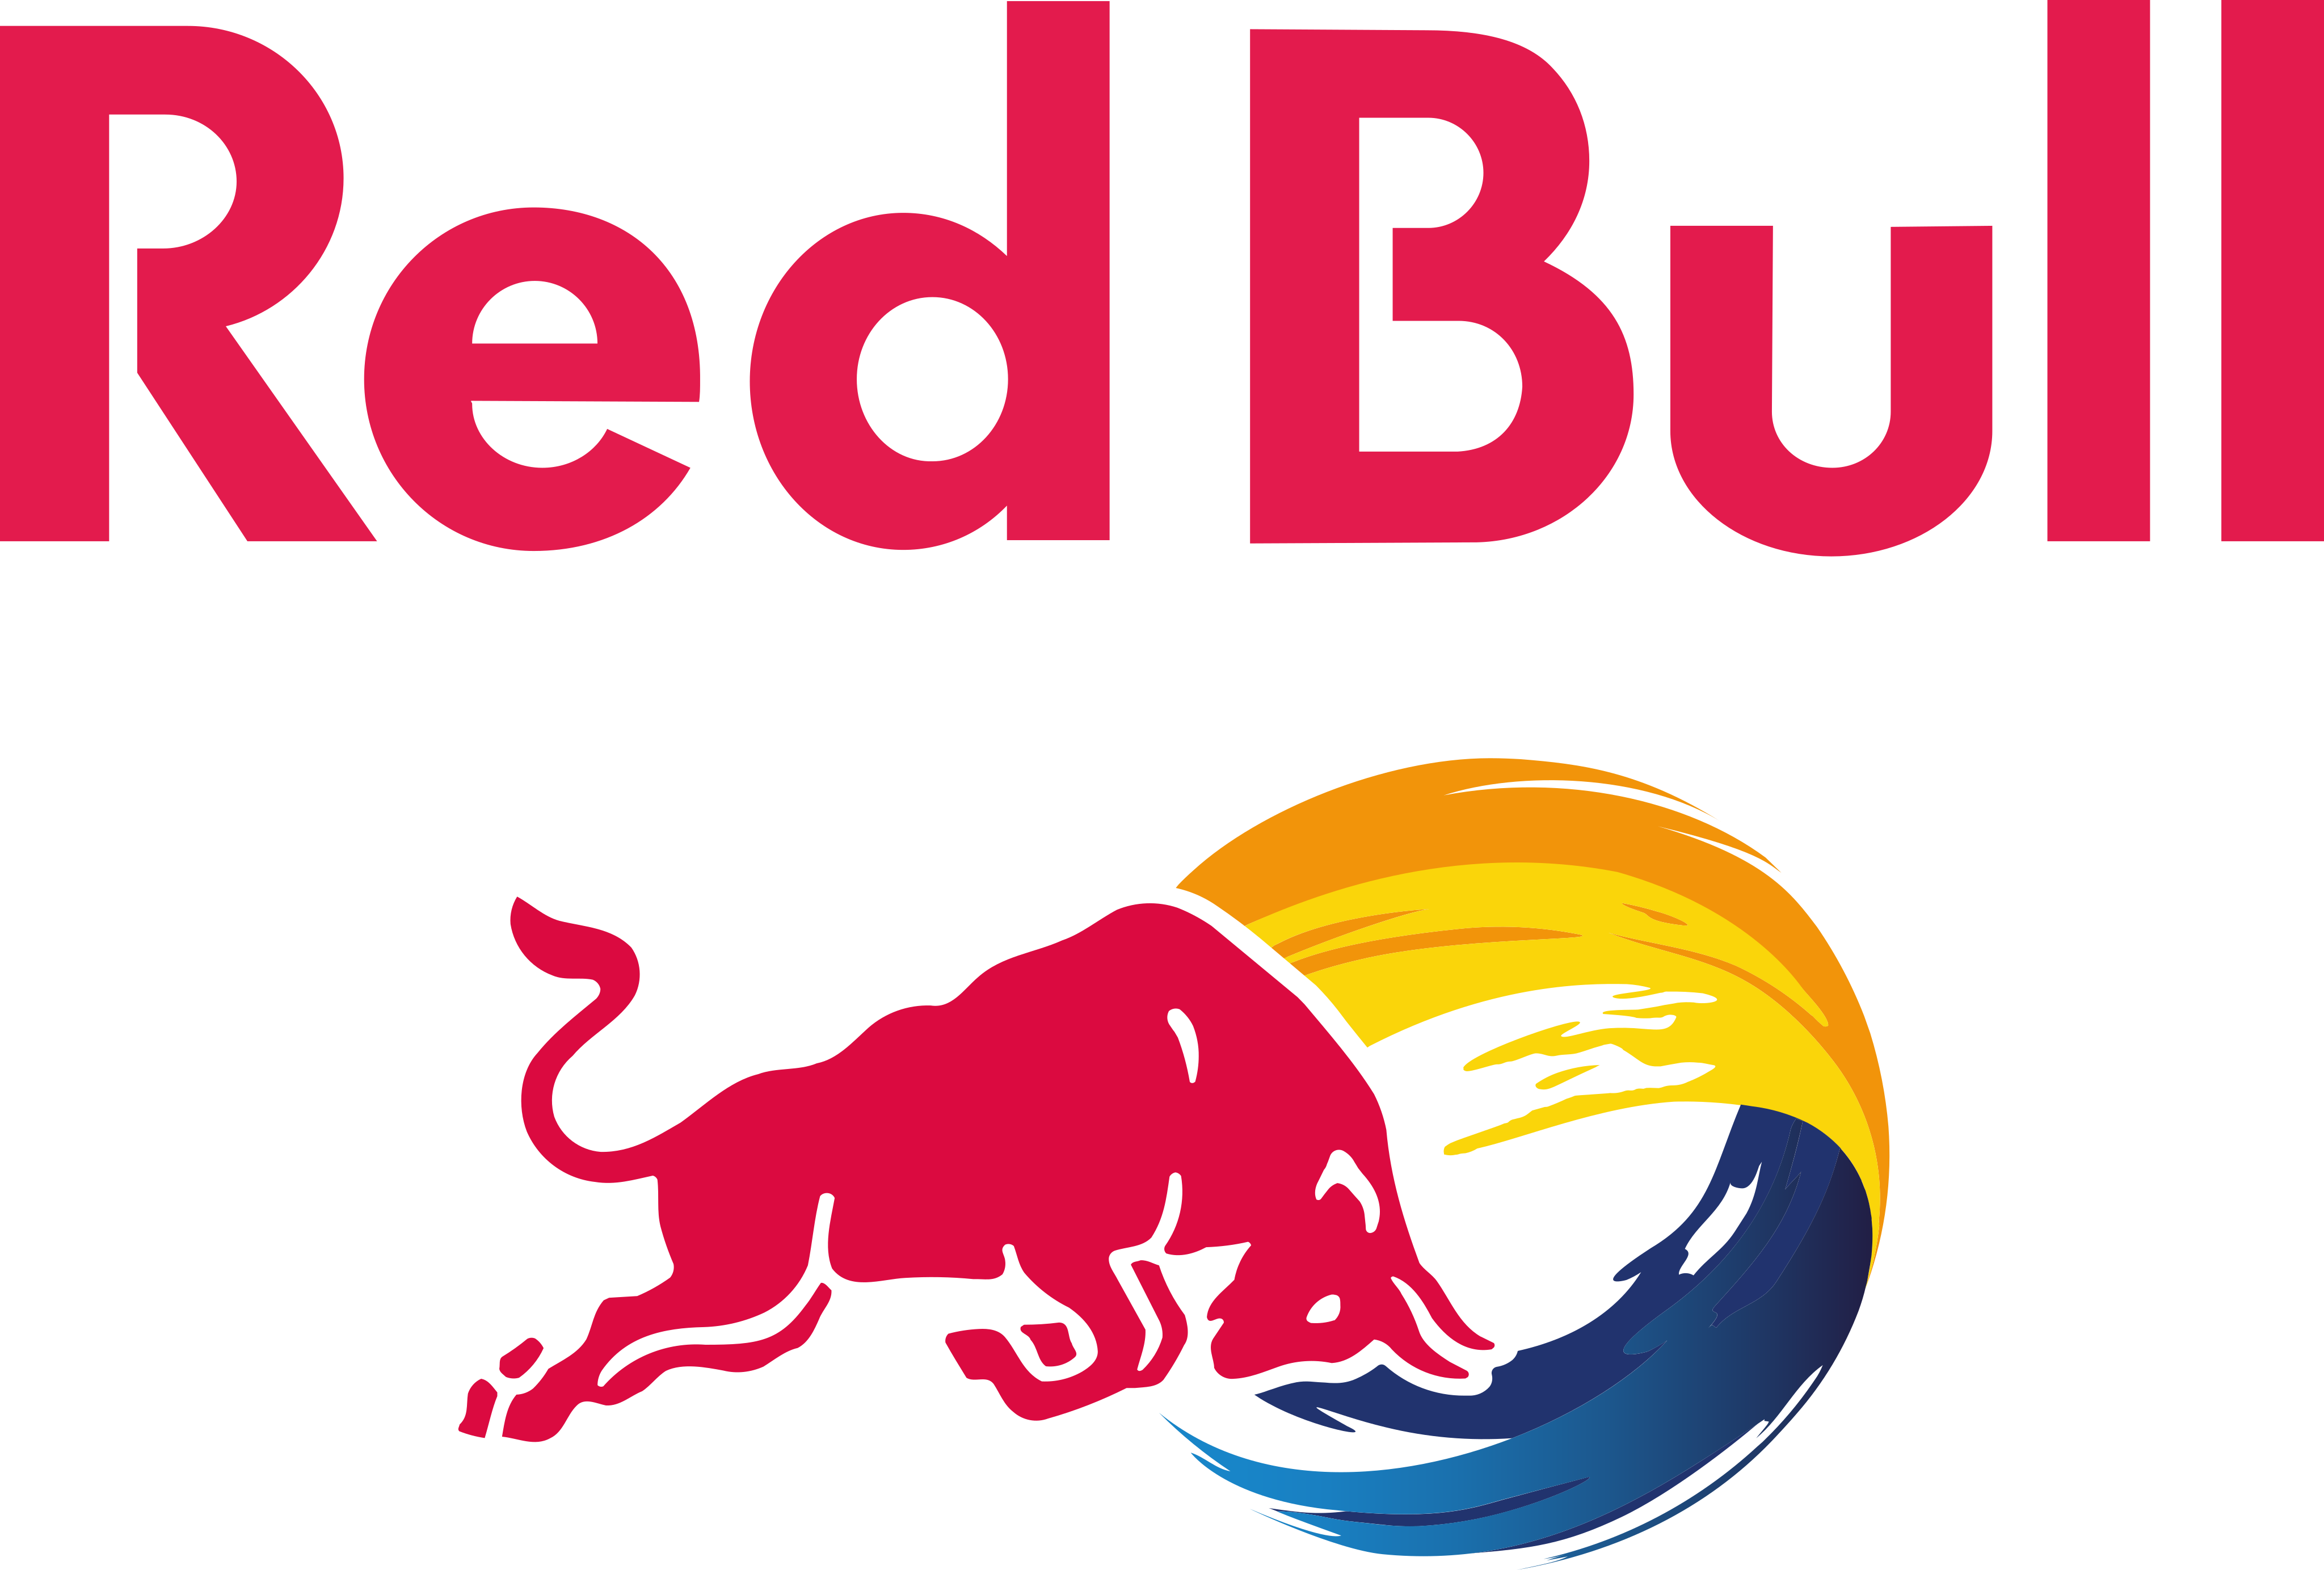 red bull logo 3 1 - Red Bull Logo